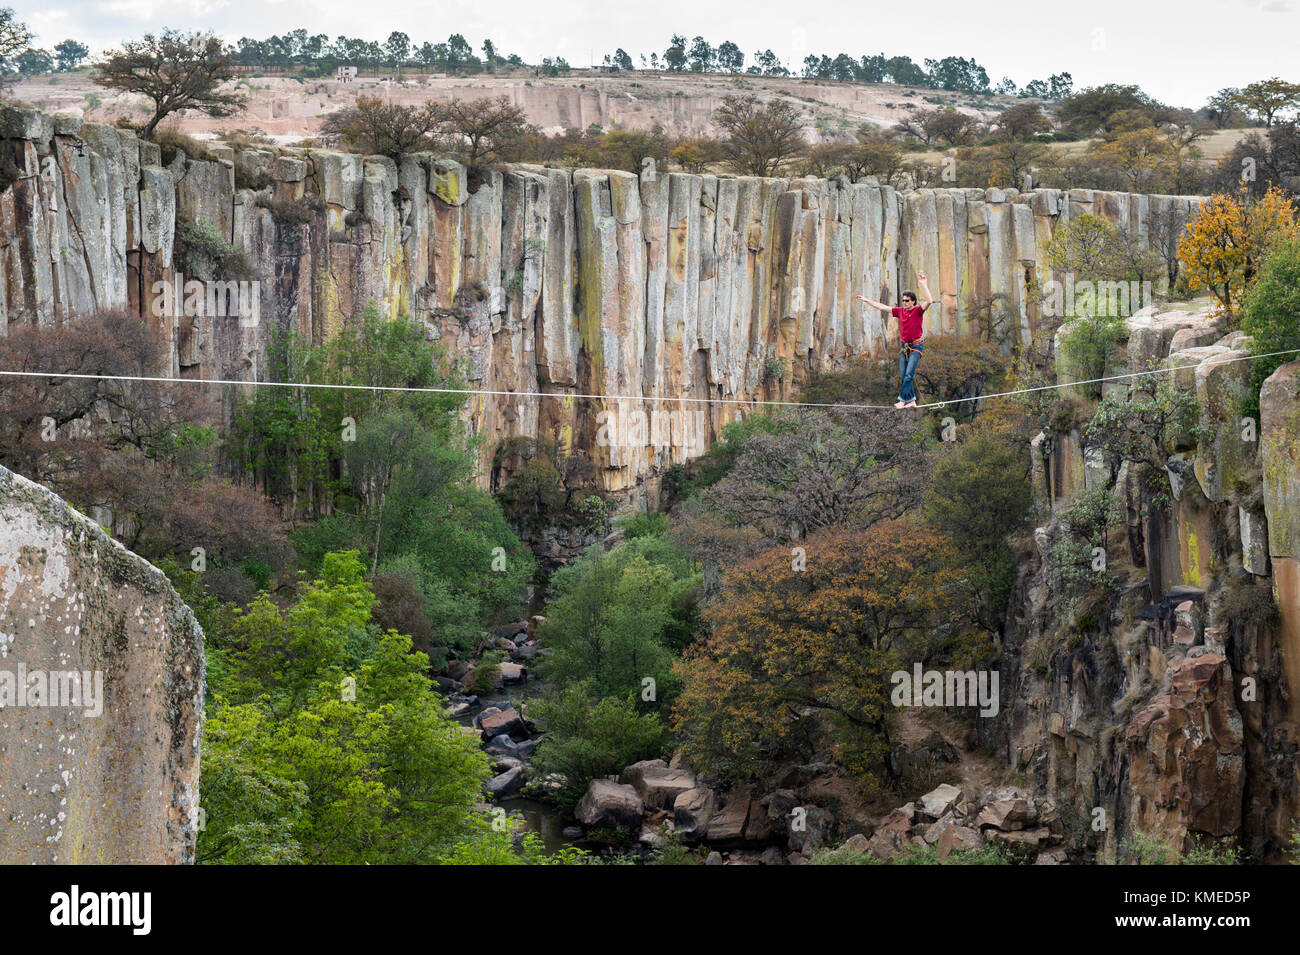 Personne en équilibre sur corde accroché sur les falaises du canyon,Aculco,État de Mexico,Mexique Banque D'Images